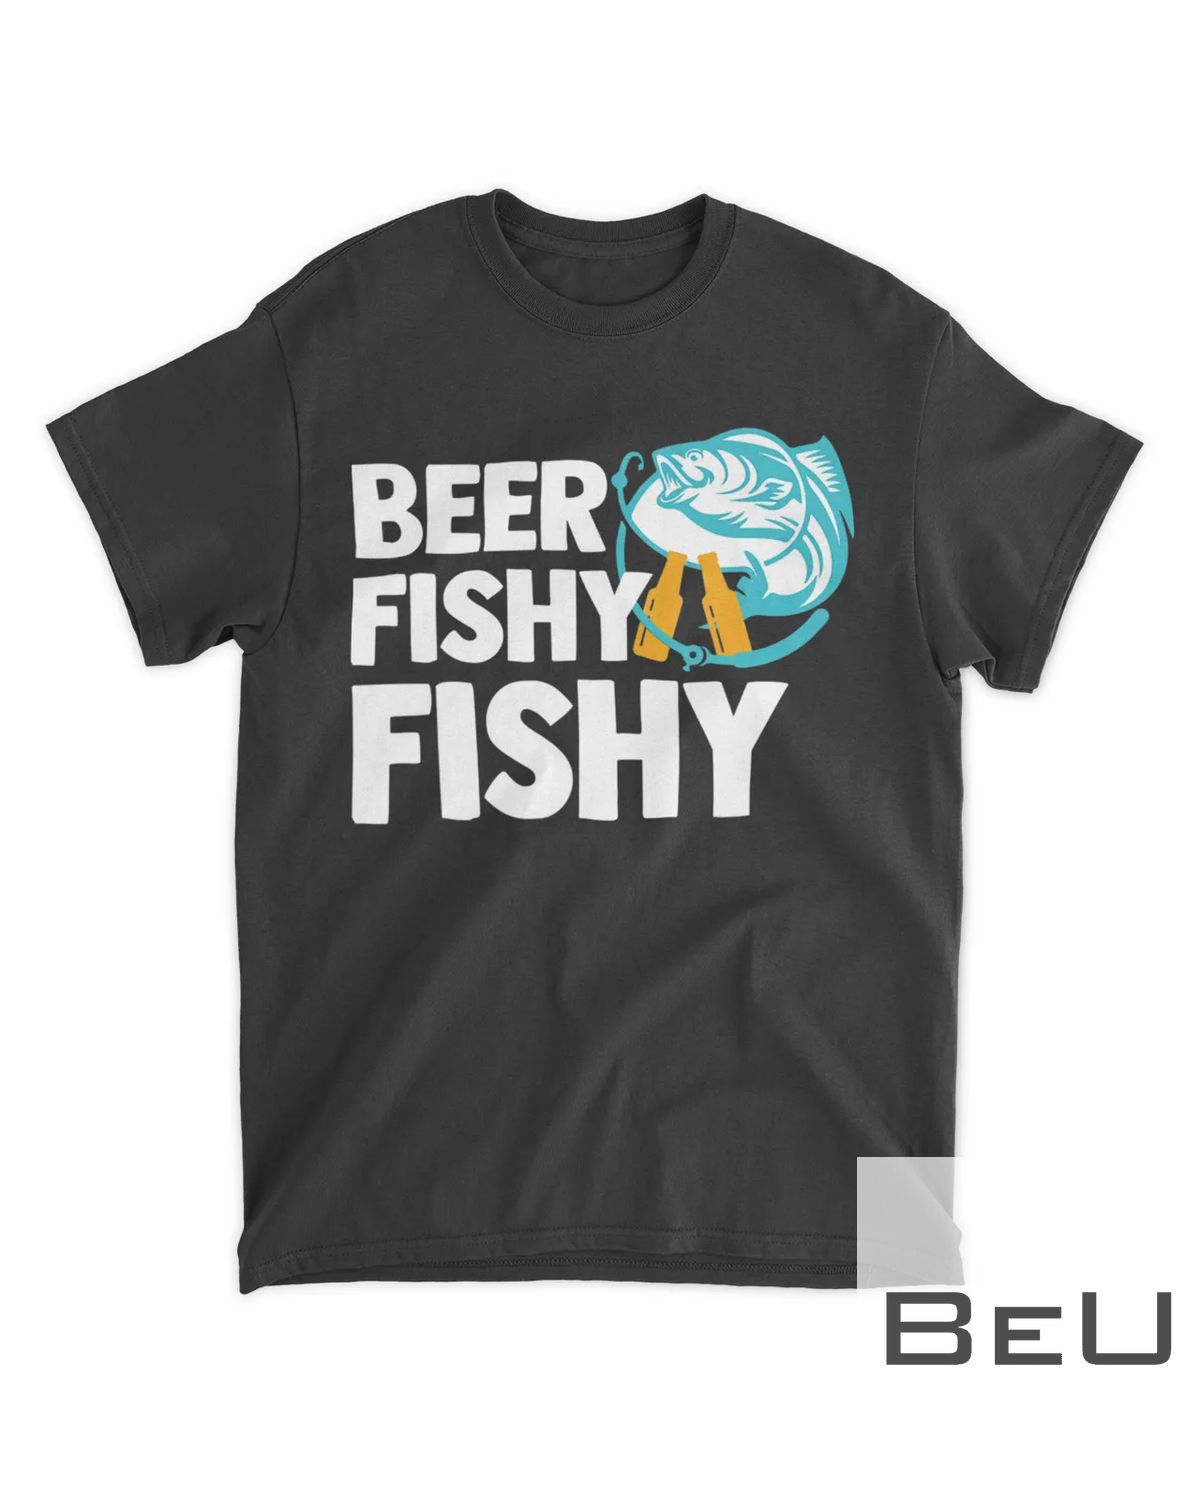 Beer Fishy Fishy Funny Fishing Drinking Joke Gift T-Shirt